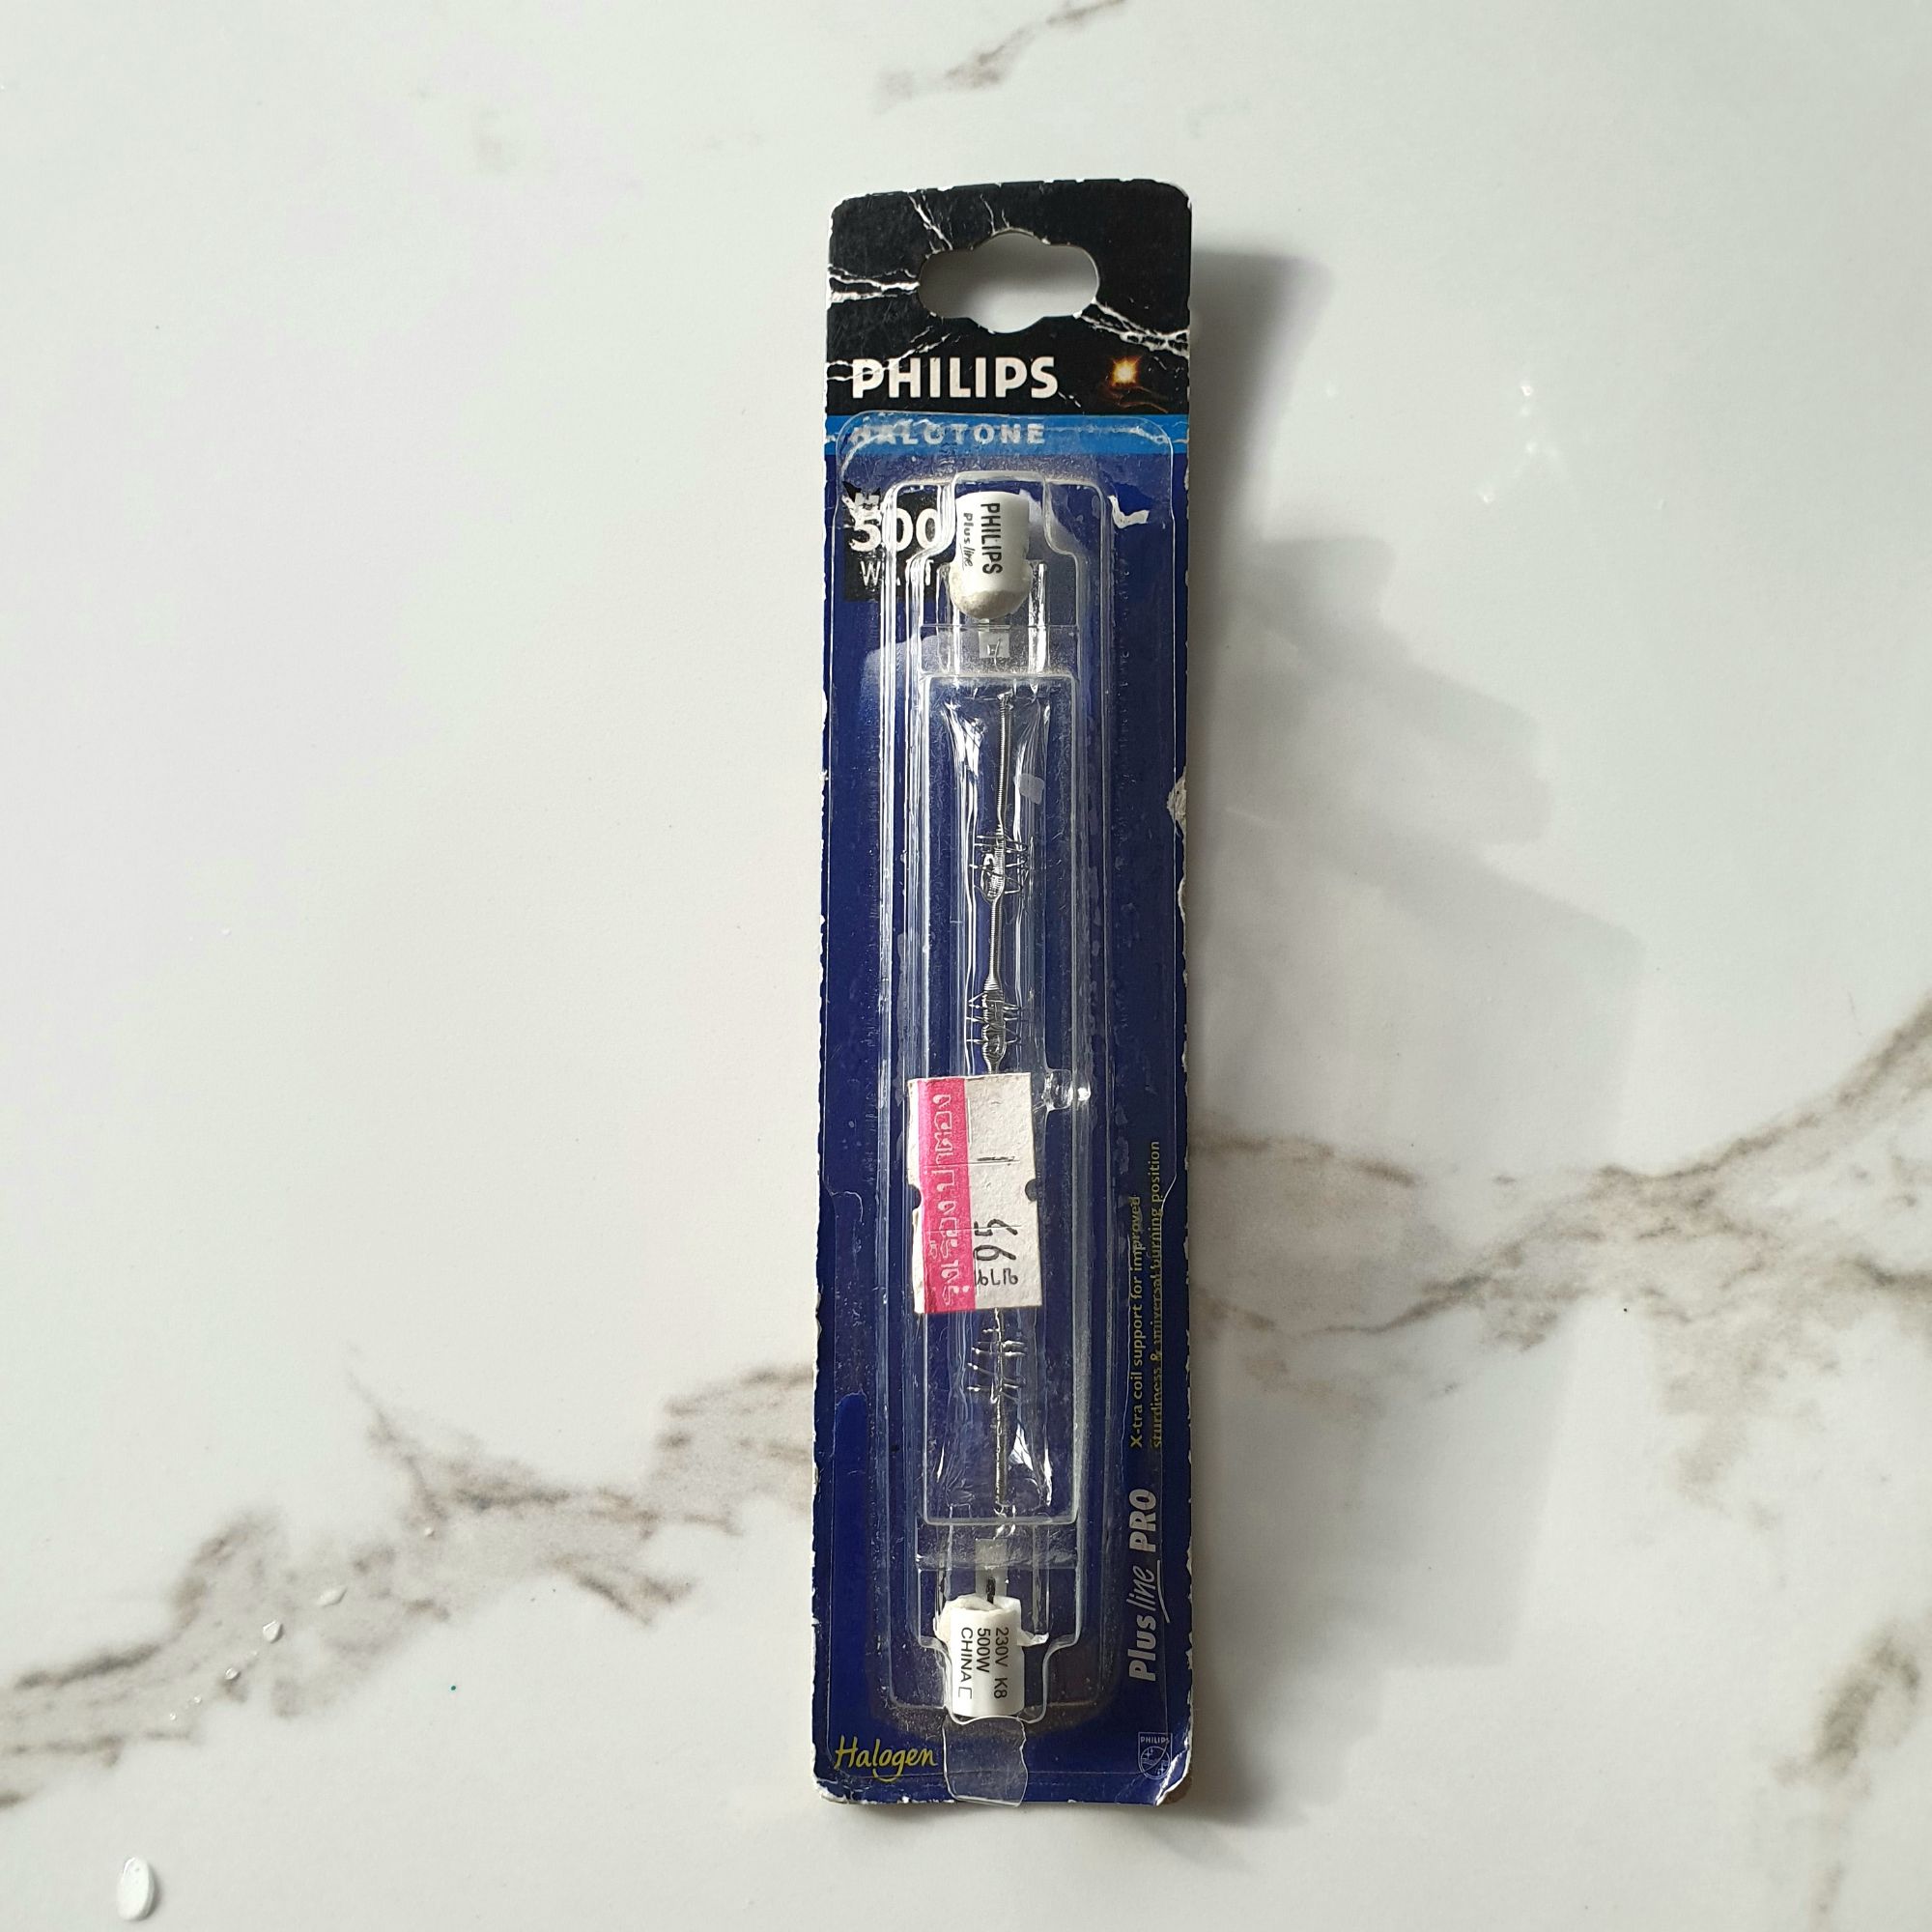 หลอดฮาโลเจน Philips 500W 230V R7s plus line pro **ร้านไฟฟ้าเลิกกิจการ**